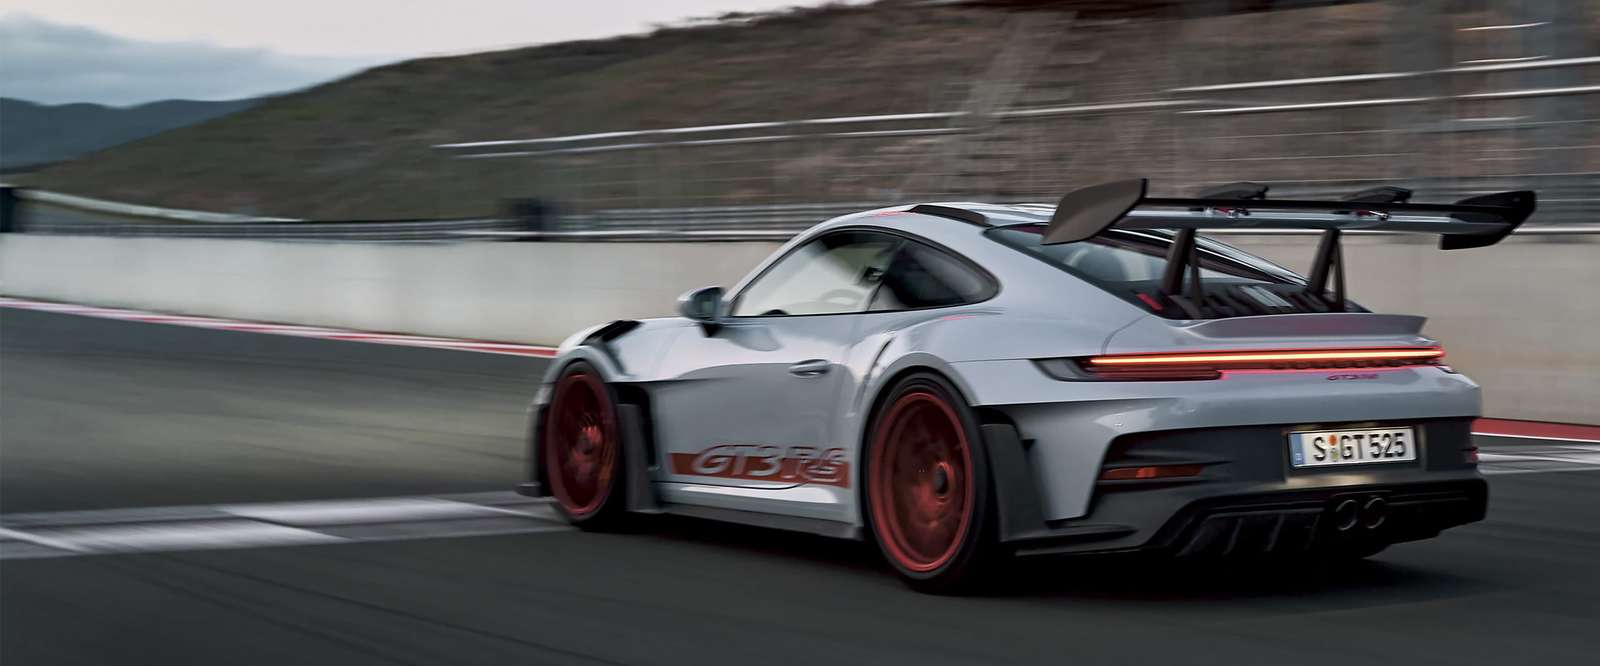 911 GT3 РС пазл онлайн из фото